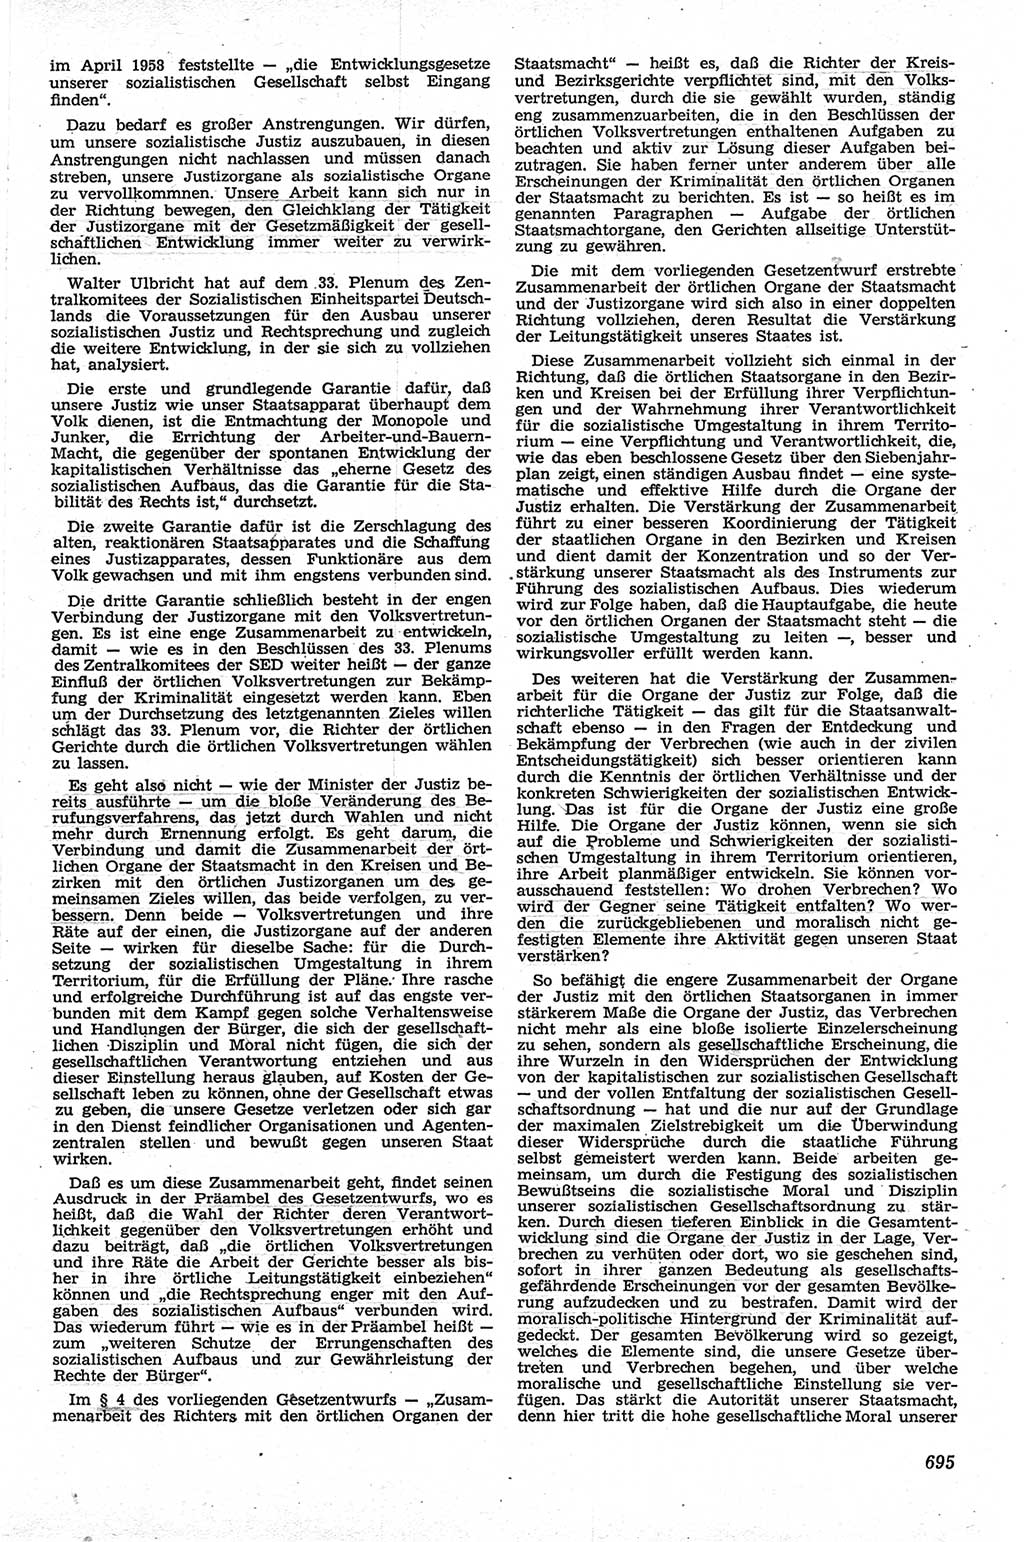 Neue Justiz (NJ), Zeitschrift für Recht und Rechtswissenschaft [Deutsche Demokratische Republik (DDR)], 13. Jahrgang 1959, Seite 695 (NJ DDR 1959, S. 695)